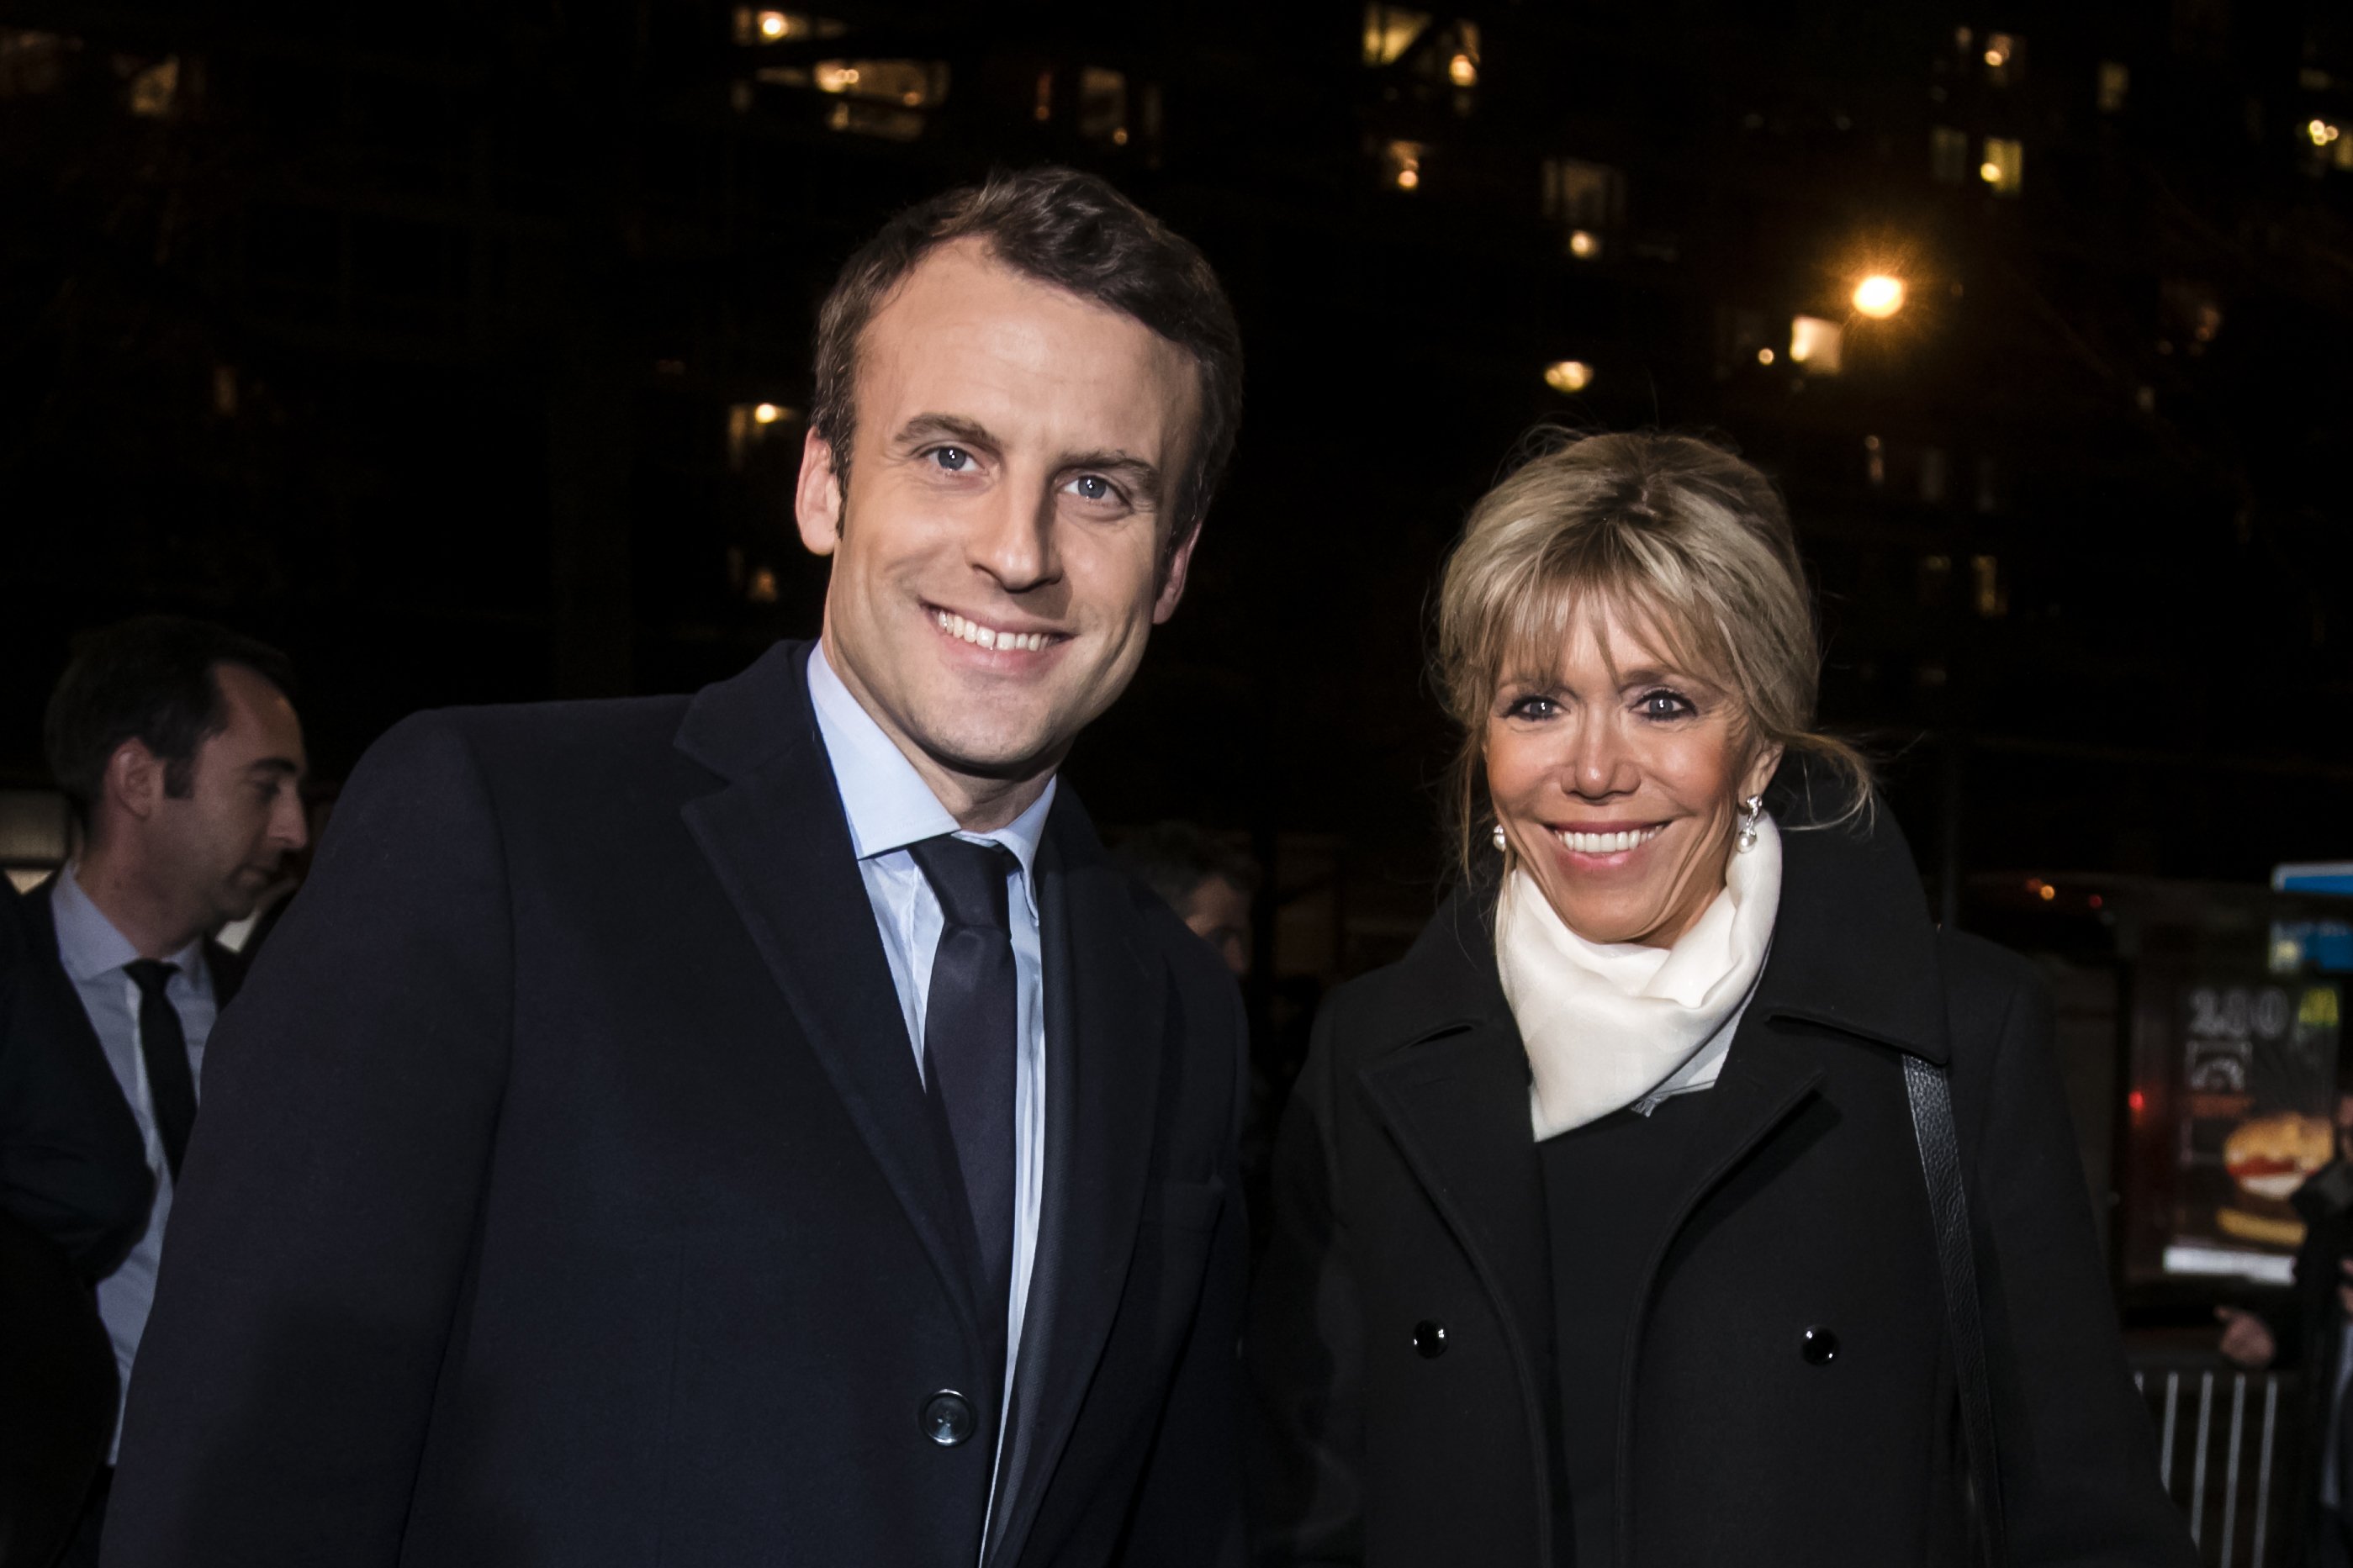 Emmanuel Macron et son épouse Brigitte Trogneux assistent au dîner traditionnel du Crif, le conseil représentatif des institutions juives de France à l'hôtel Pullman à Montparnasse le 22 février 2017 à Paris, France. | Photo : Getty Images